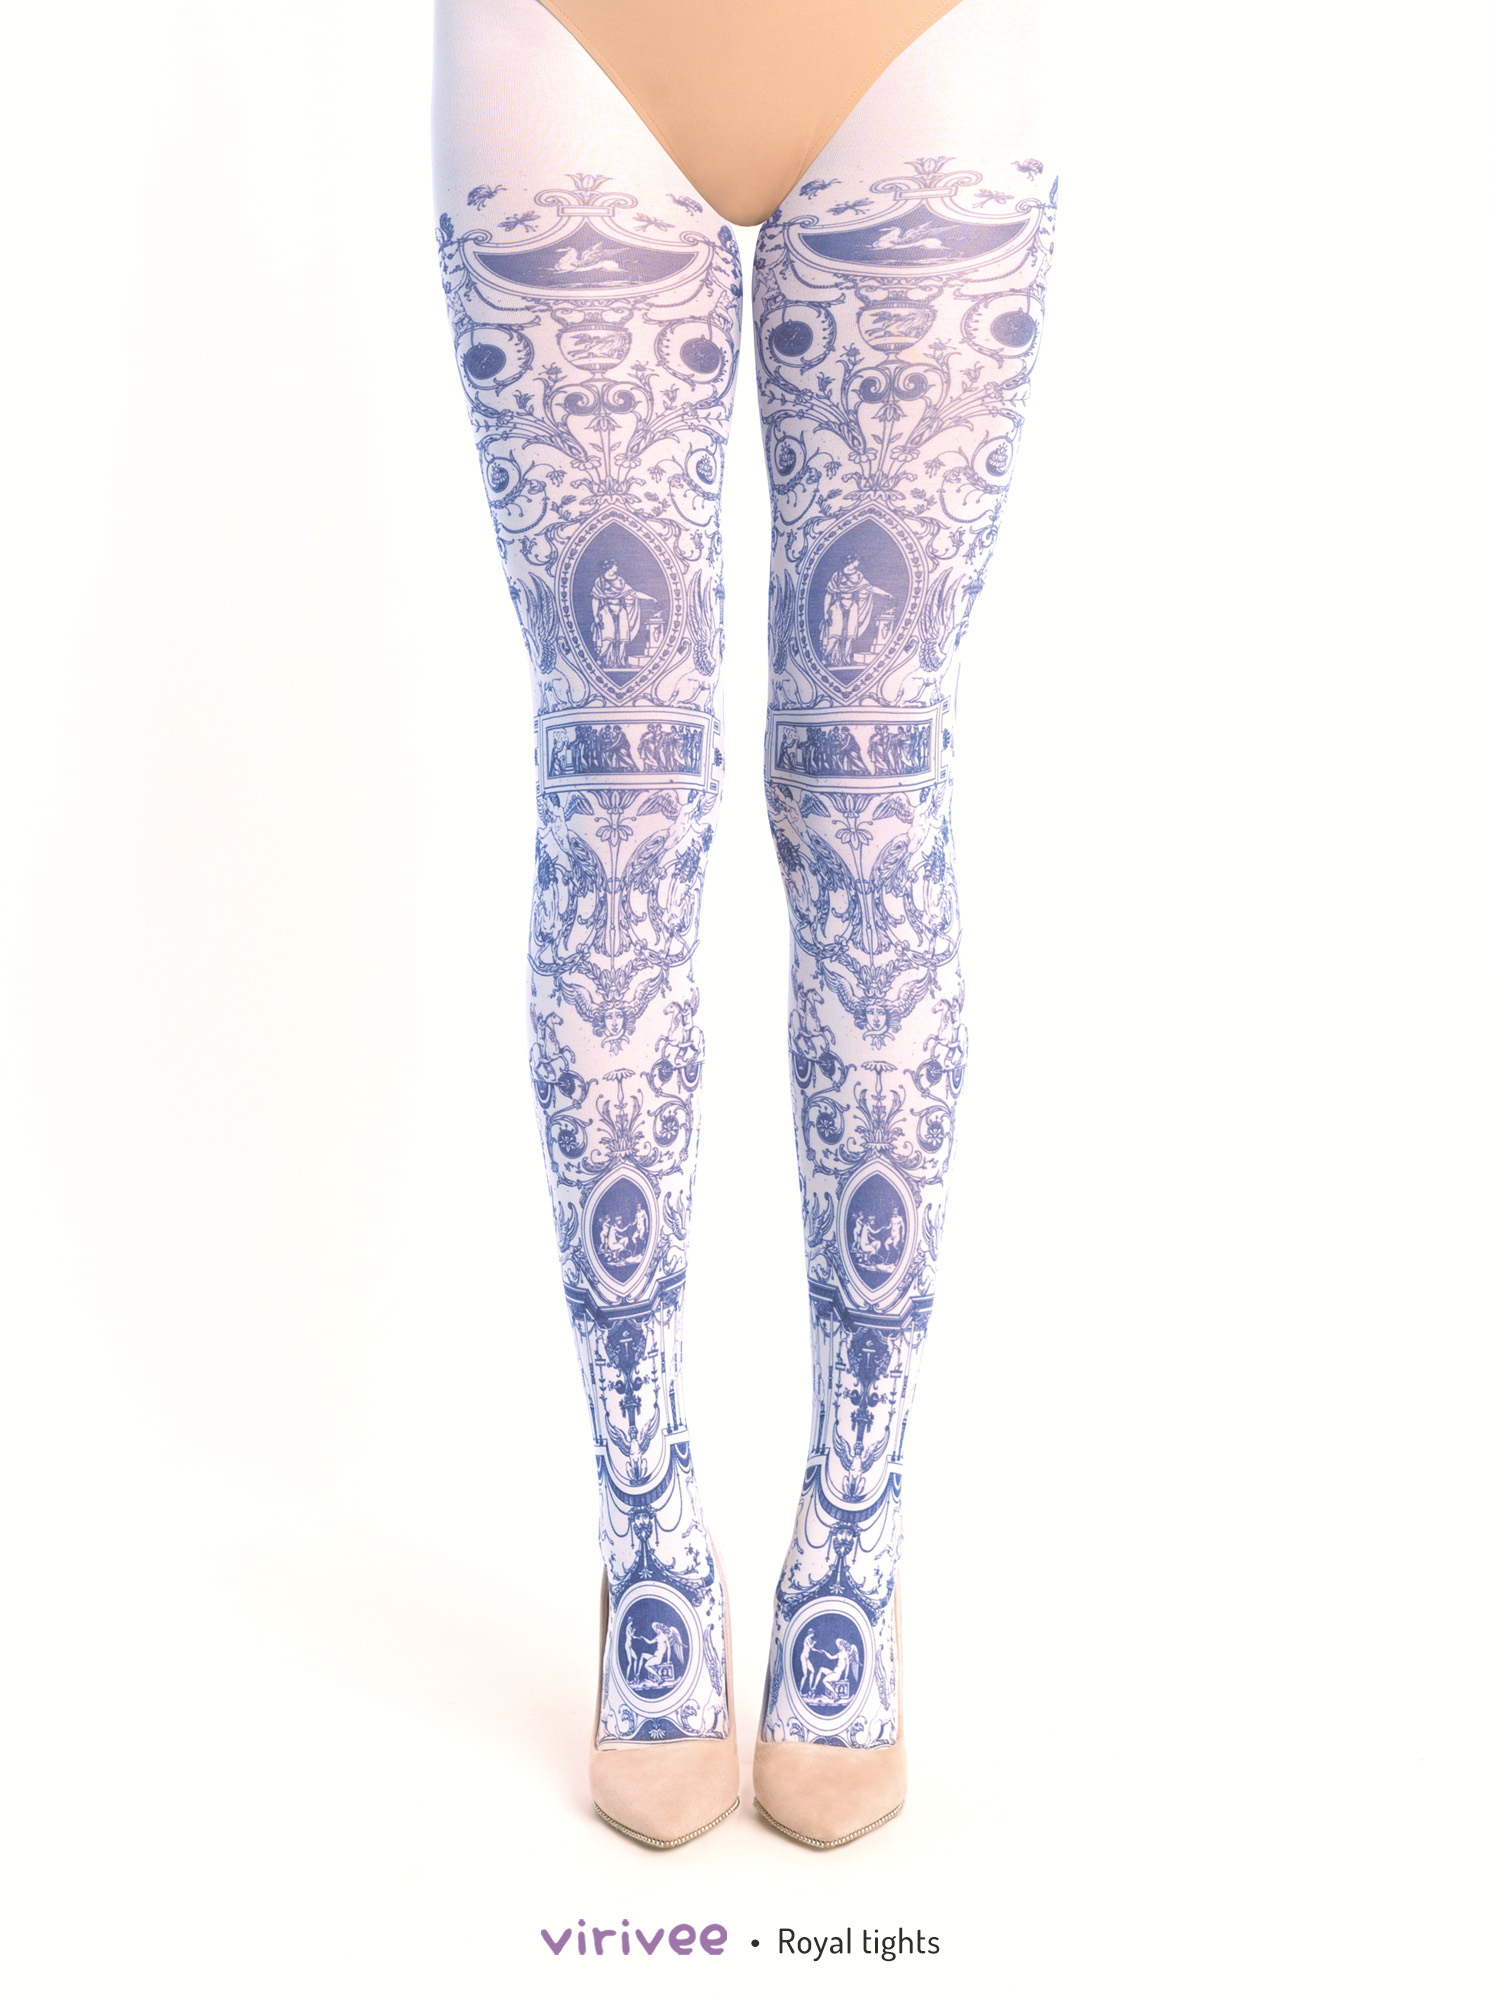 Royal lolita tights by Virivee